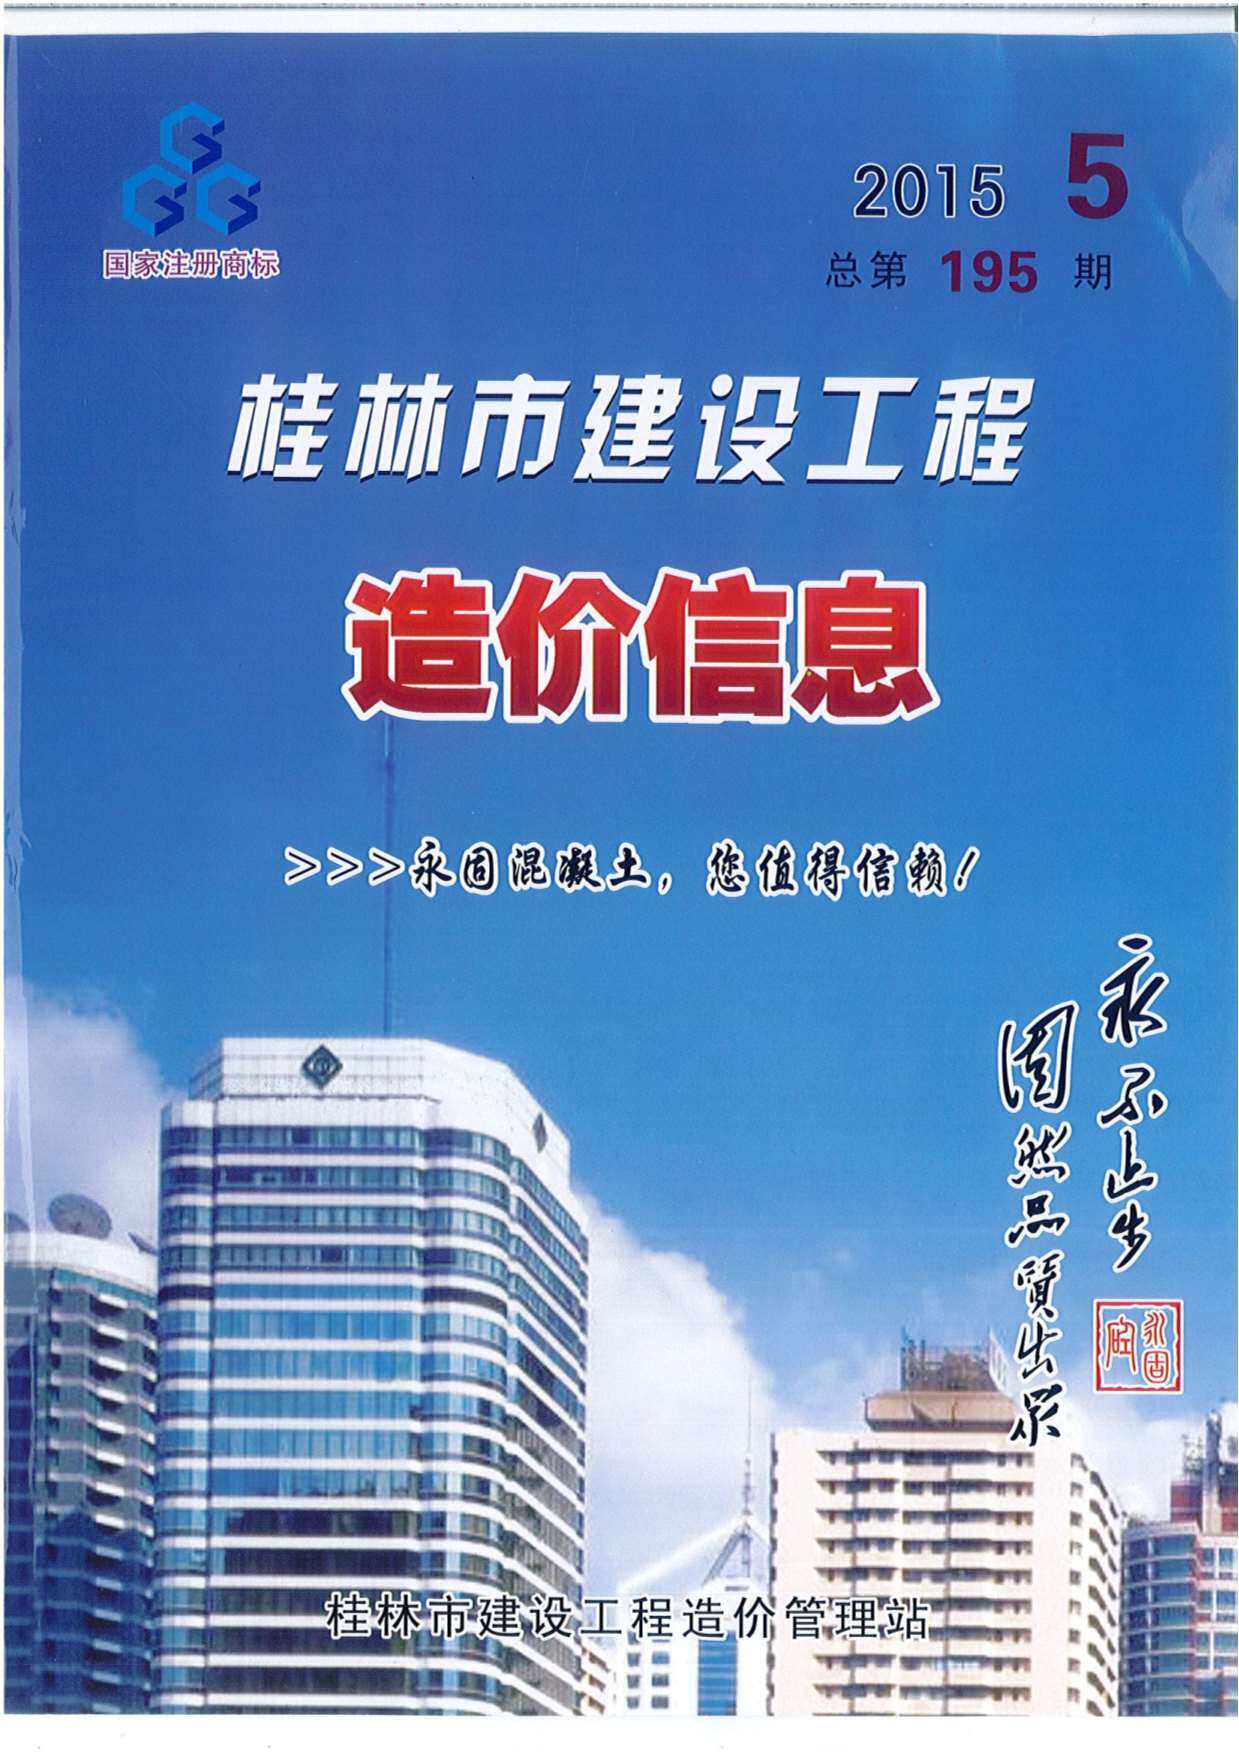 桂林市2015年5月造价信息造价信息期刊PDF扫描件